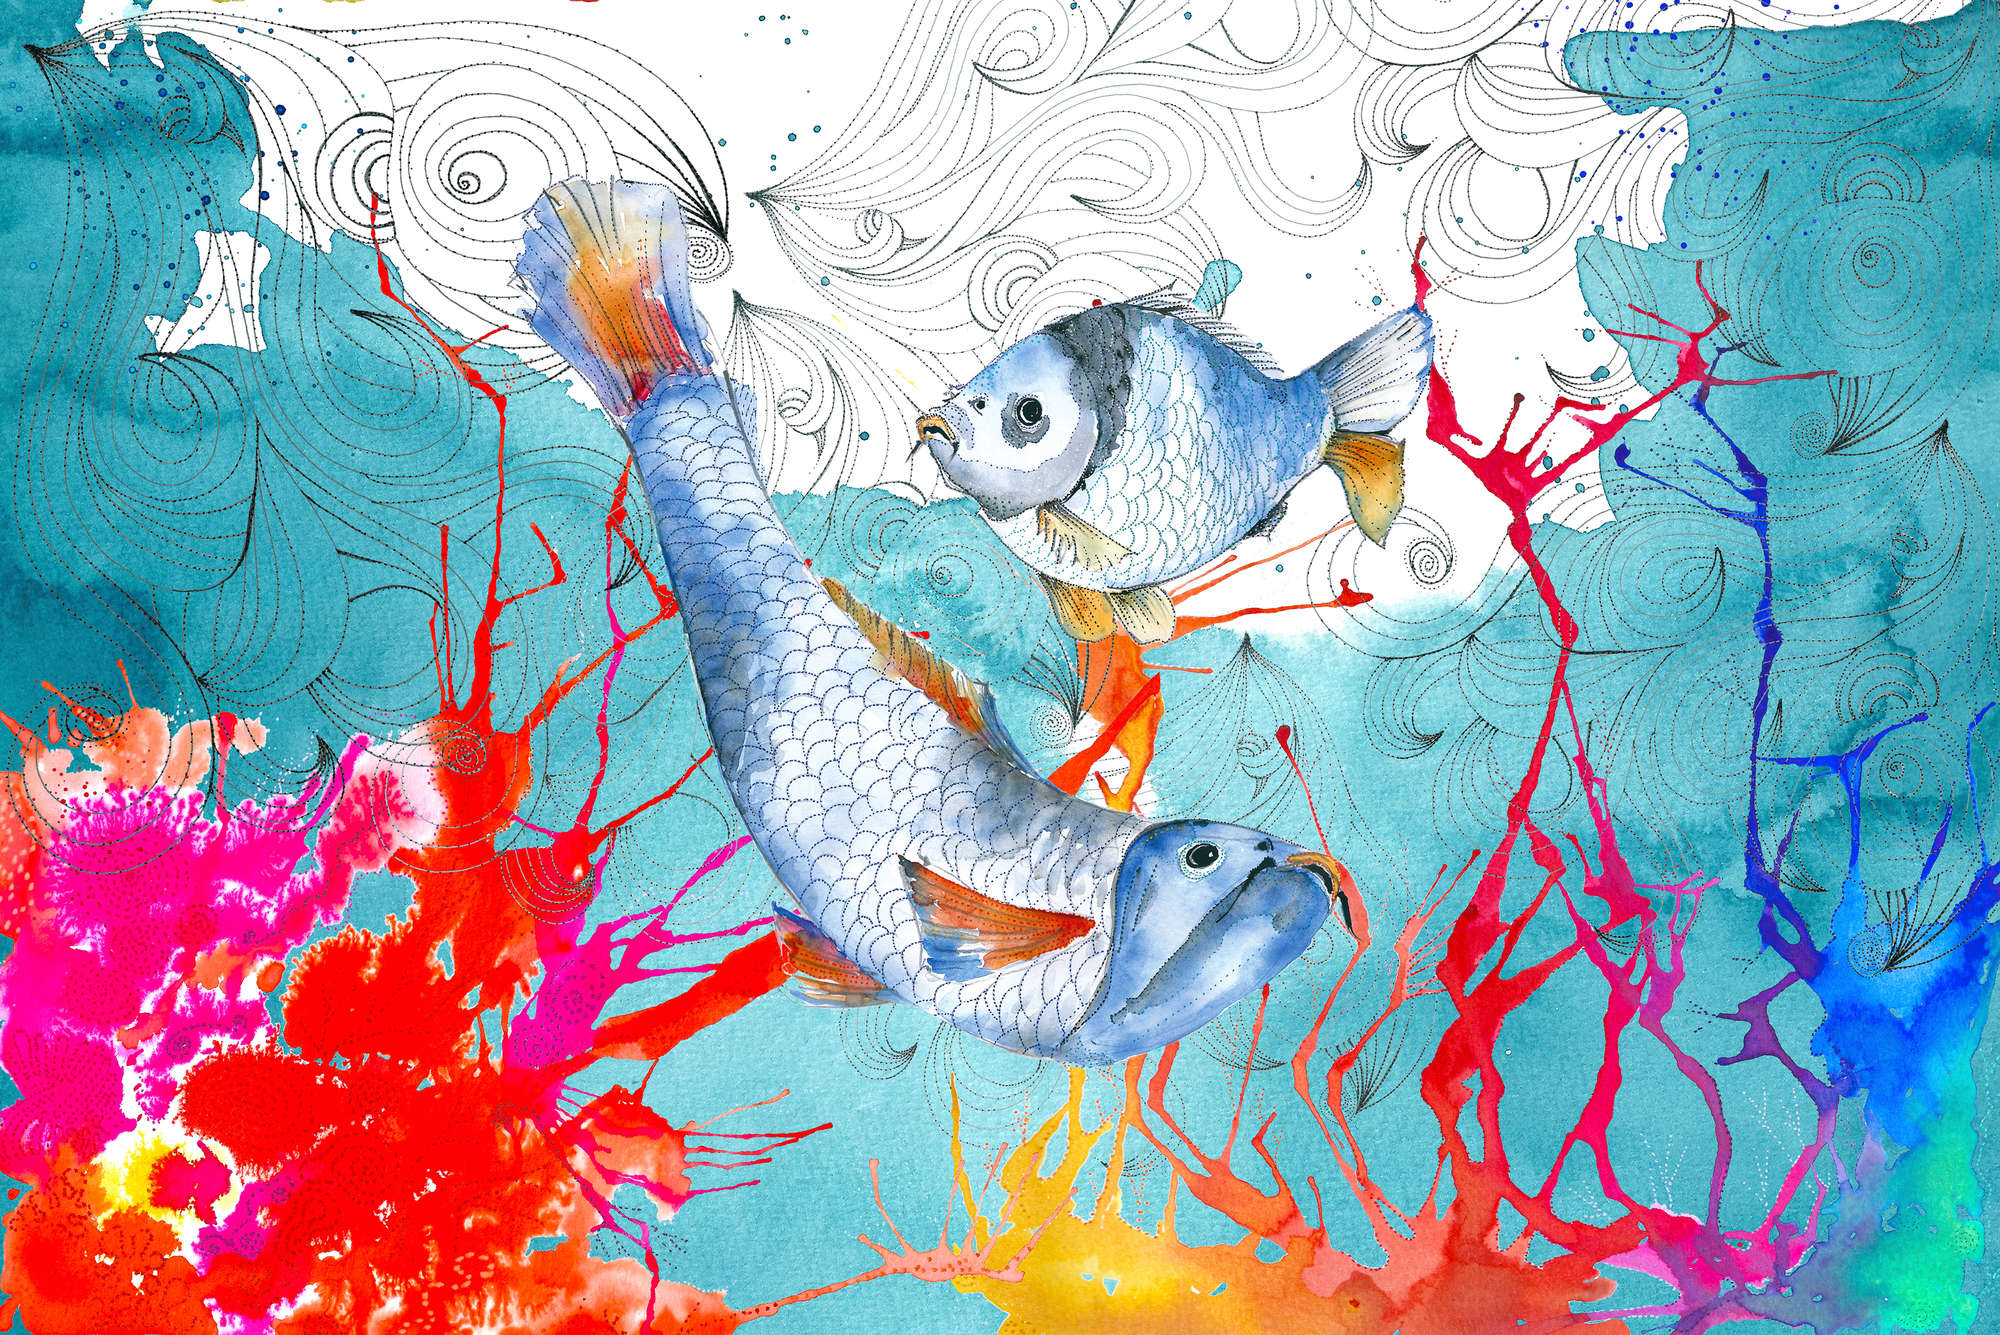             Aquarell Fototapete Fisch Motiv in Blau und Rosa auf Strukturvlies
        